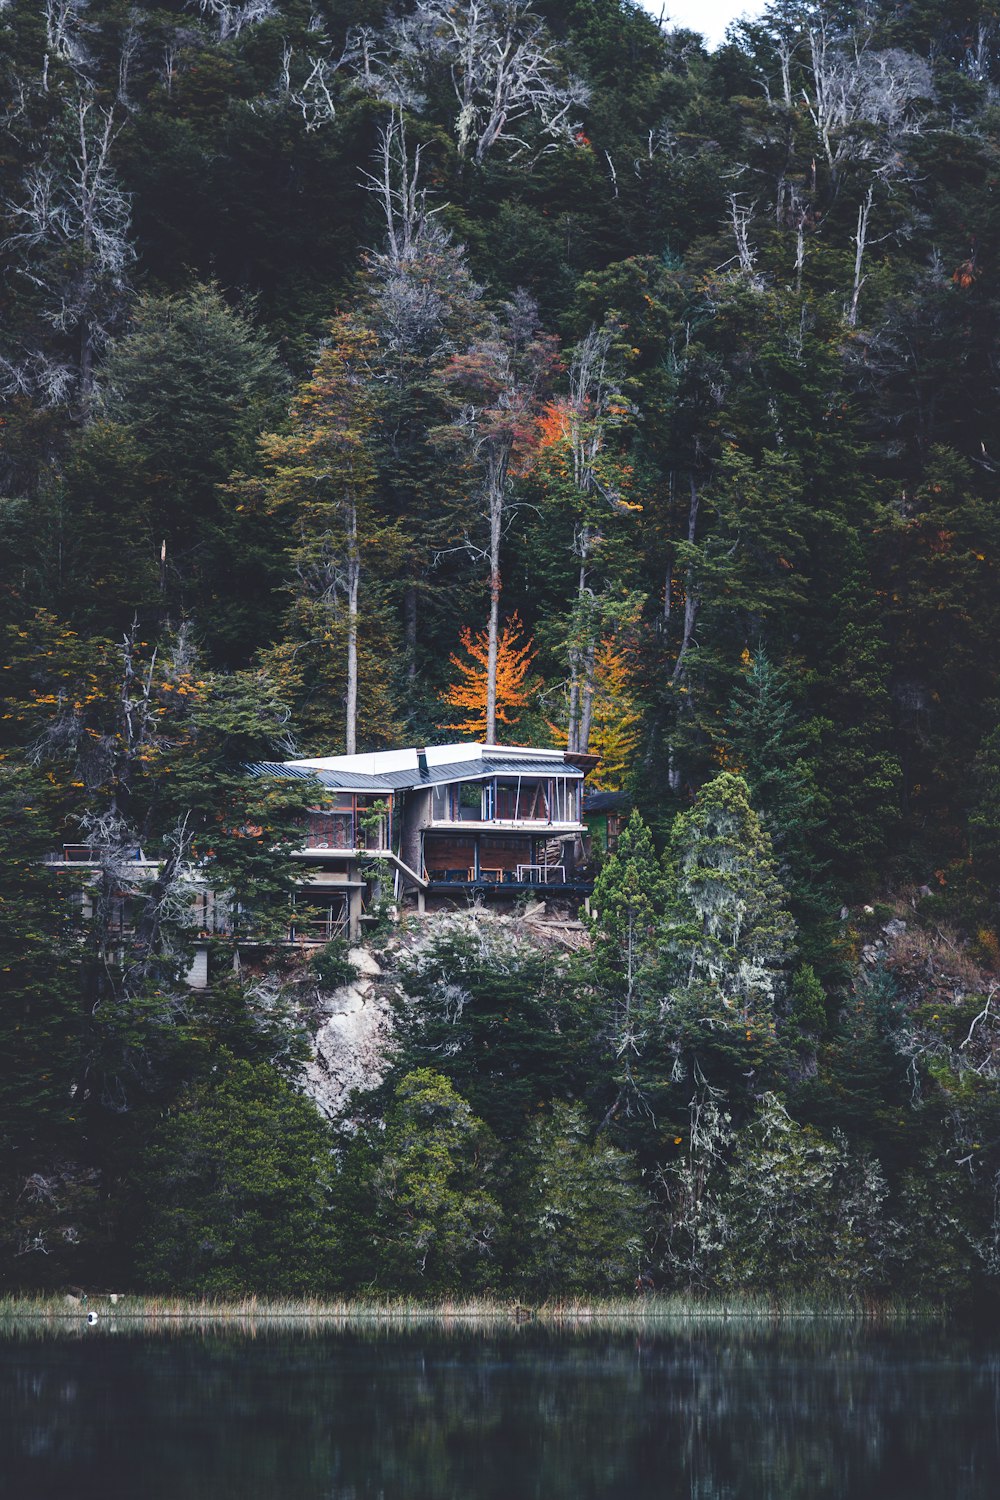 무성한 녹색 언덕 위에 앉아있는 집